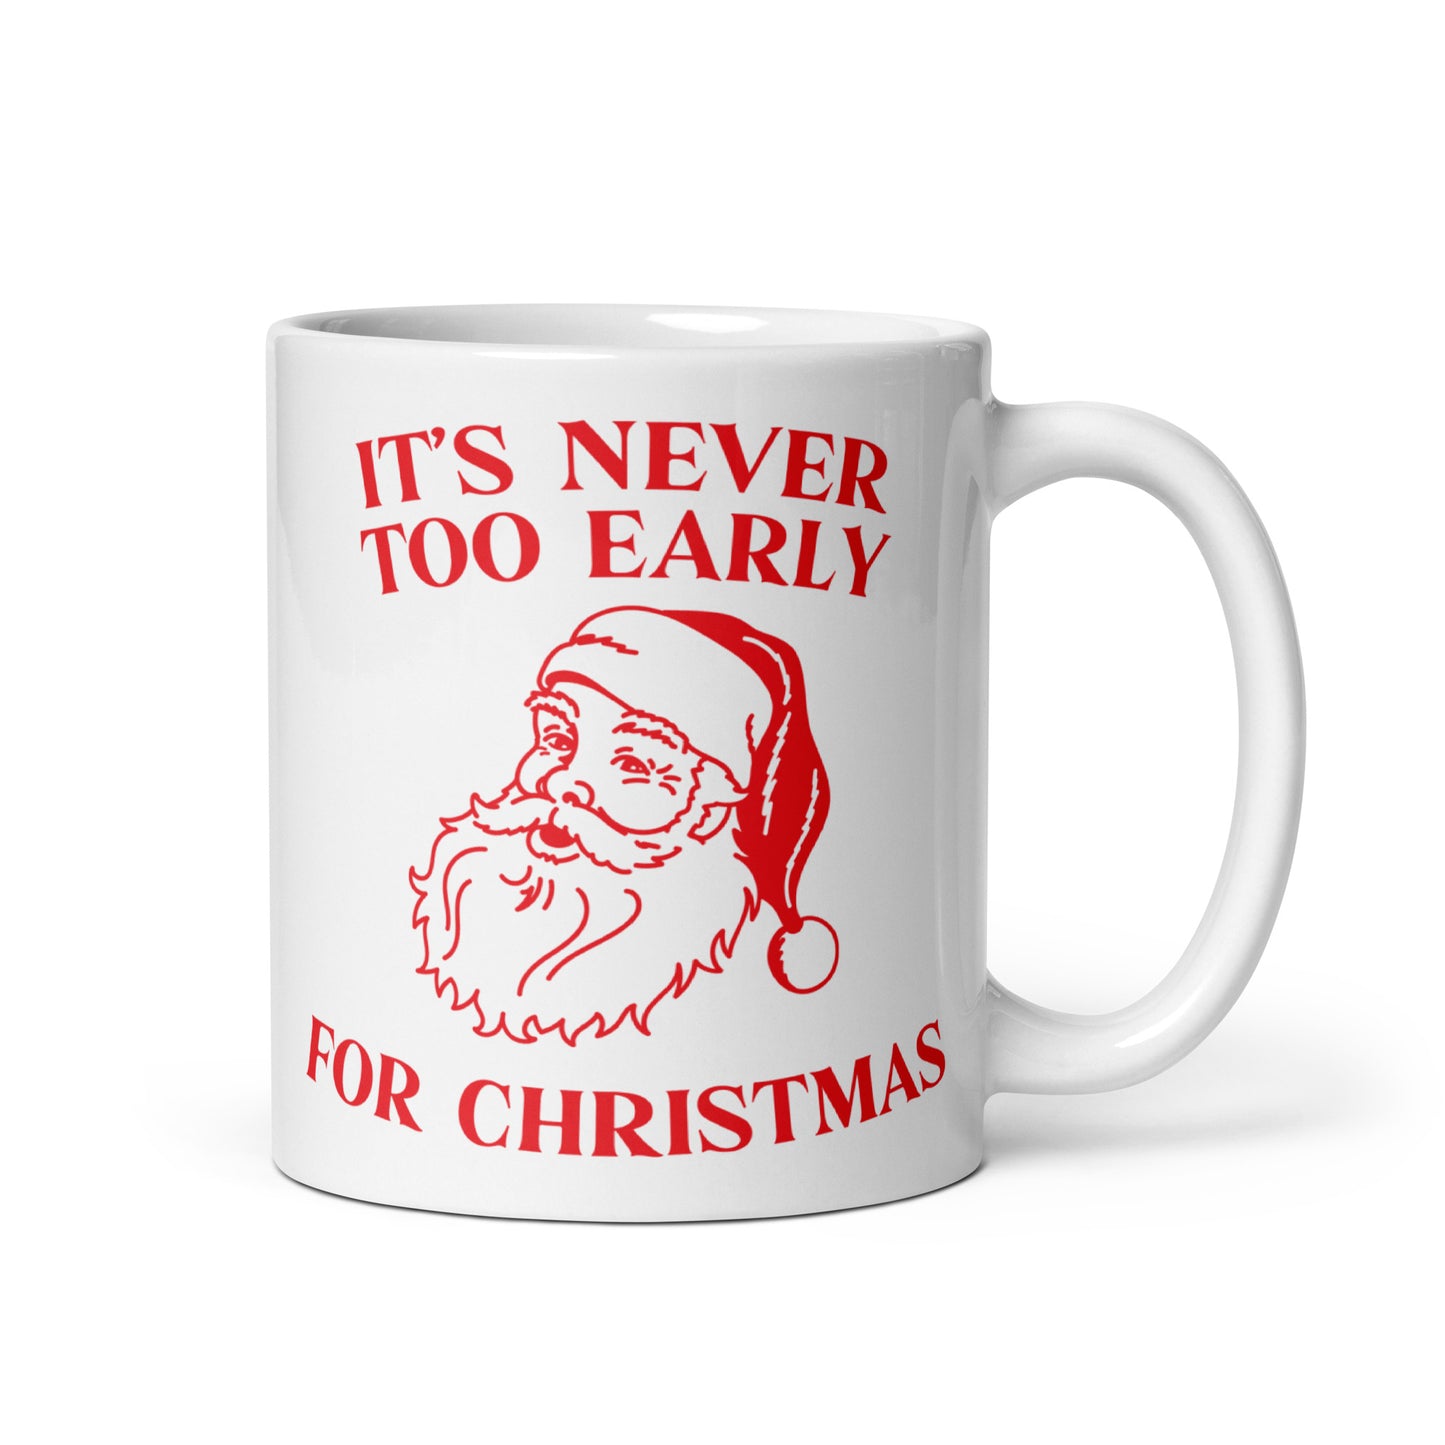 It's Never Too Early For Christmas Mug